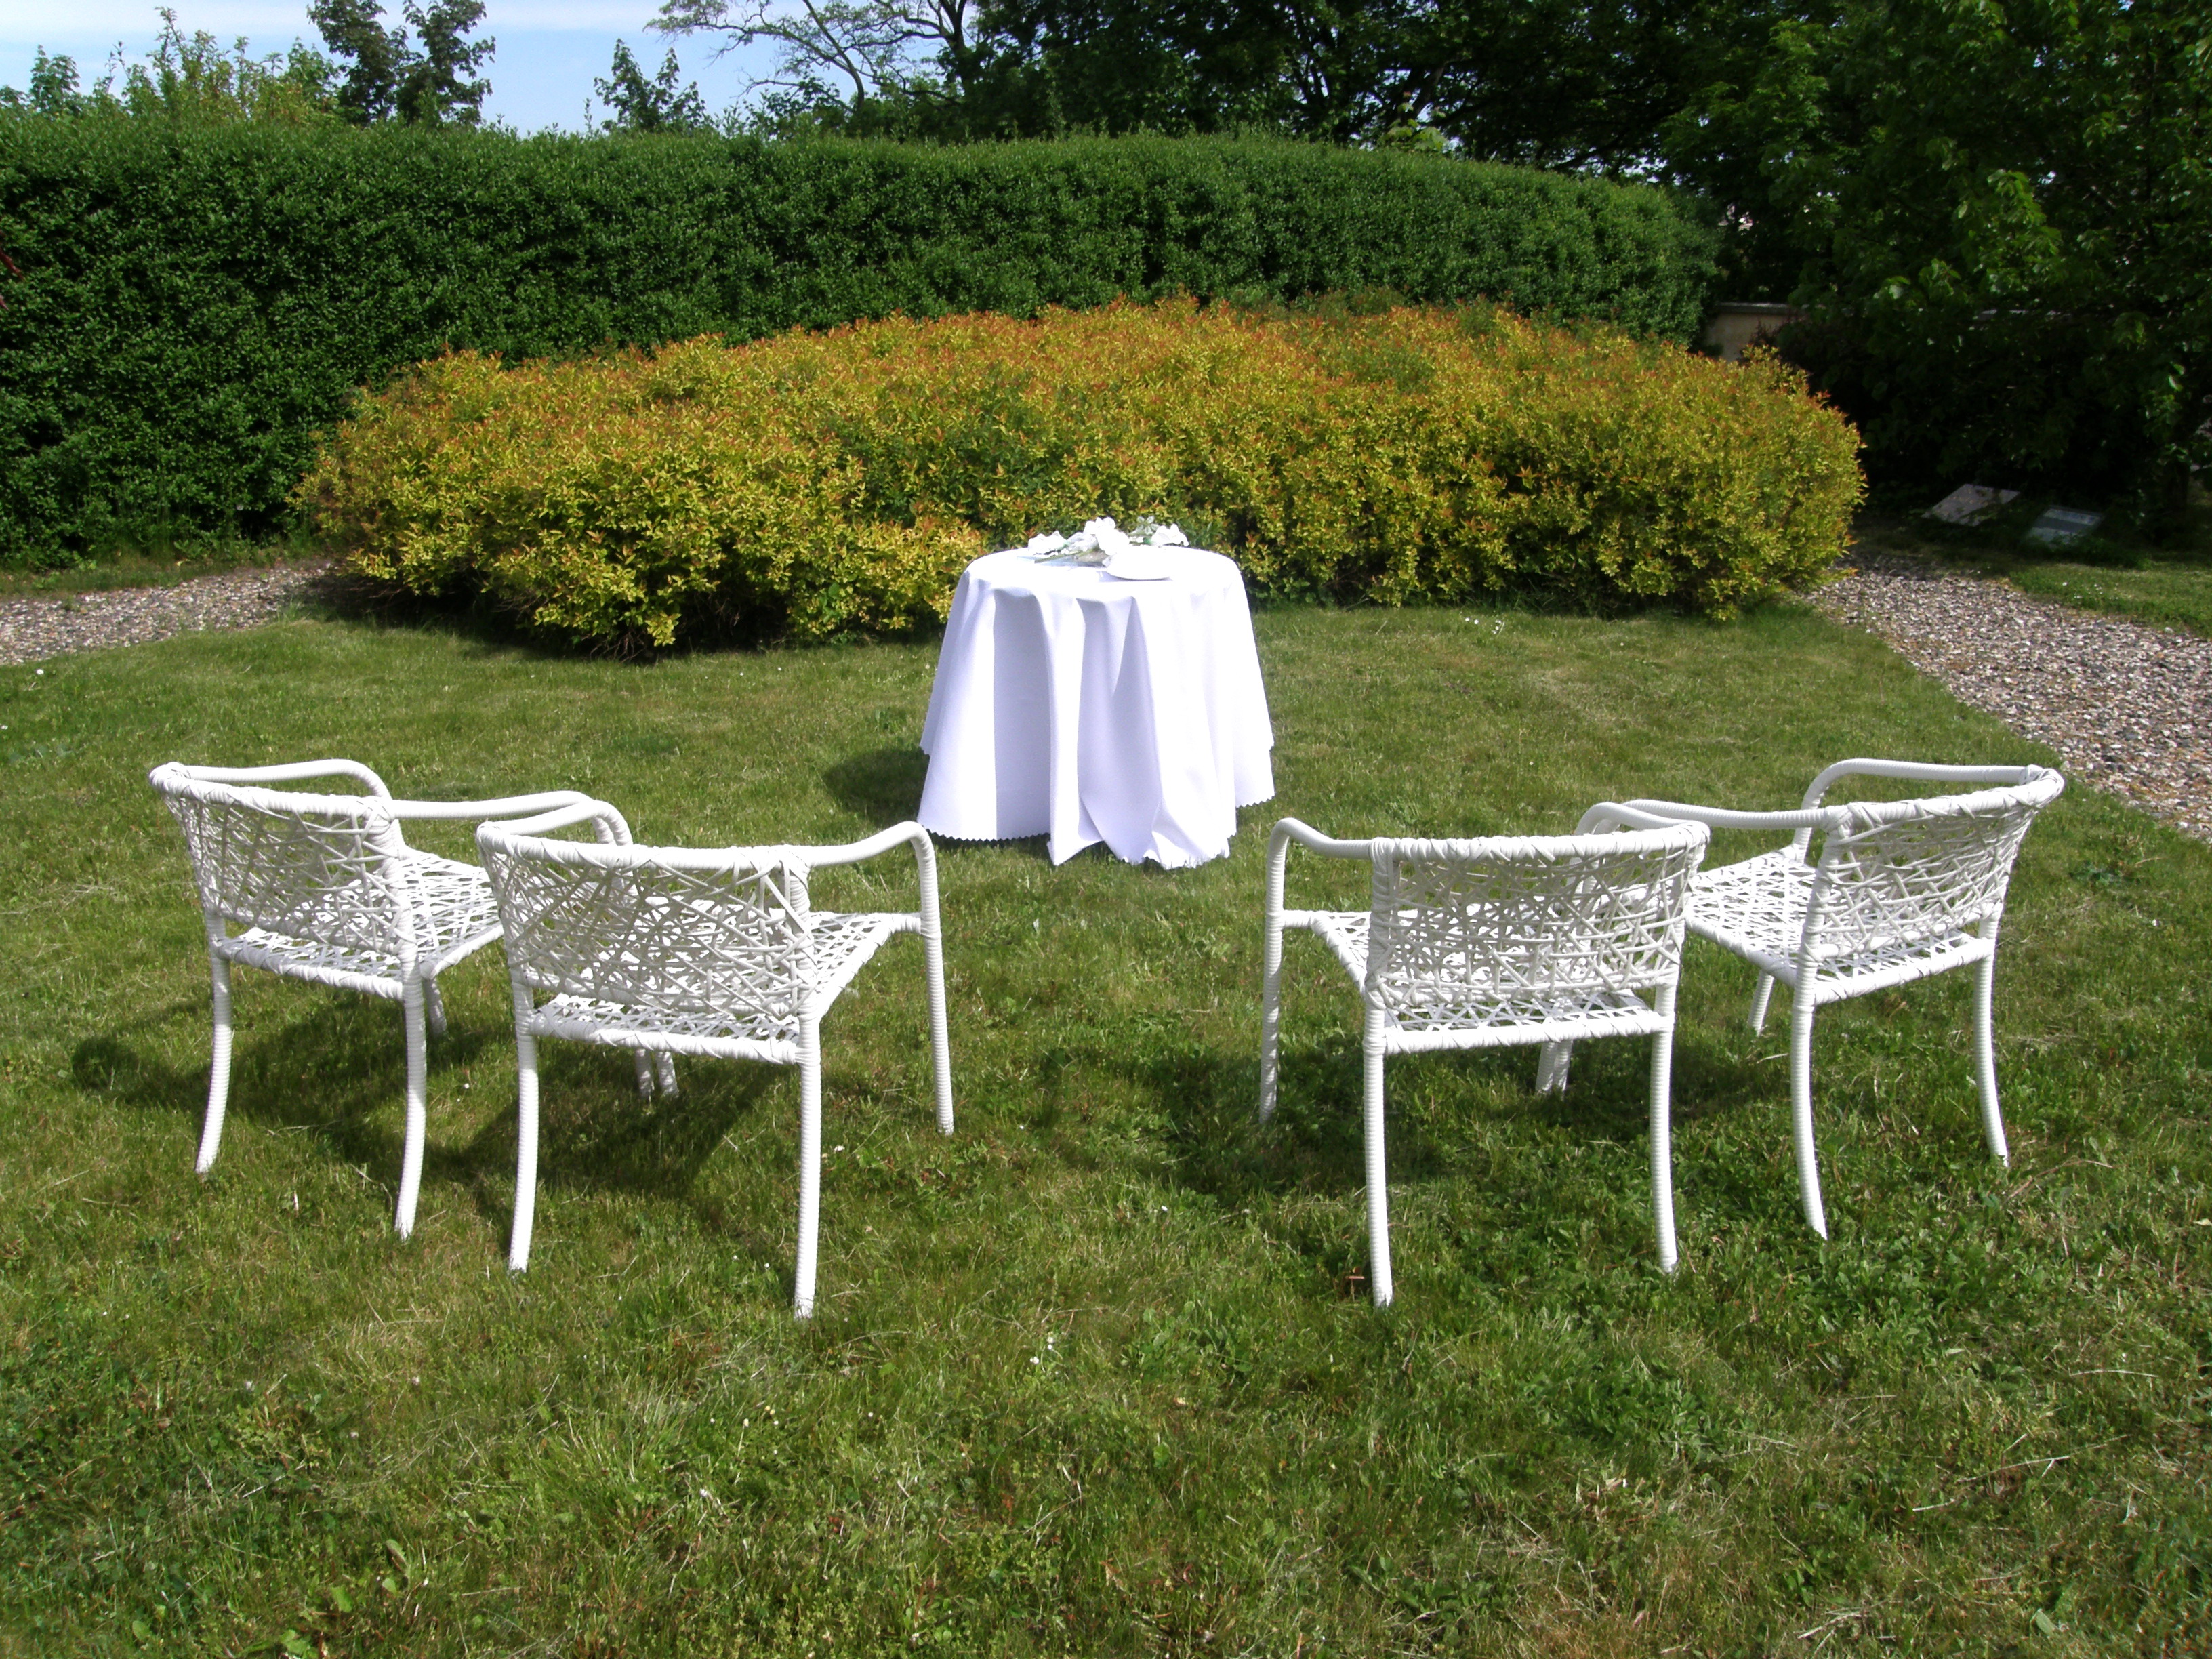 Romantické prostředí zahrady přímo vybízí k uspořádání svatby